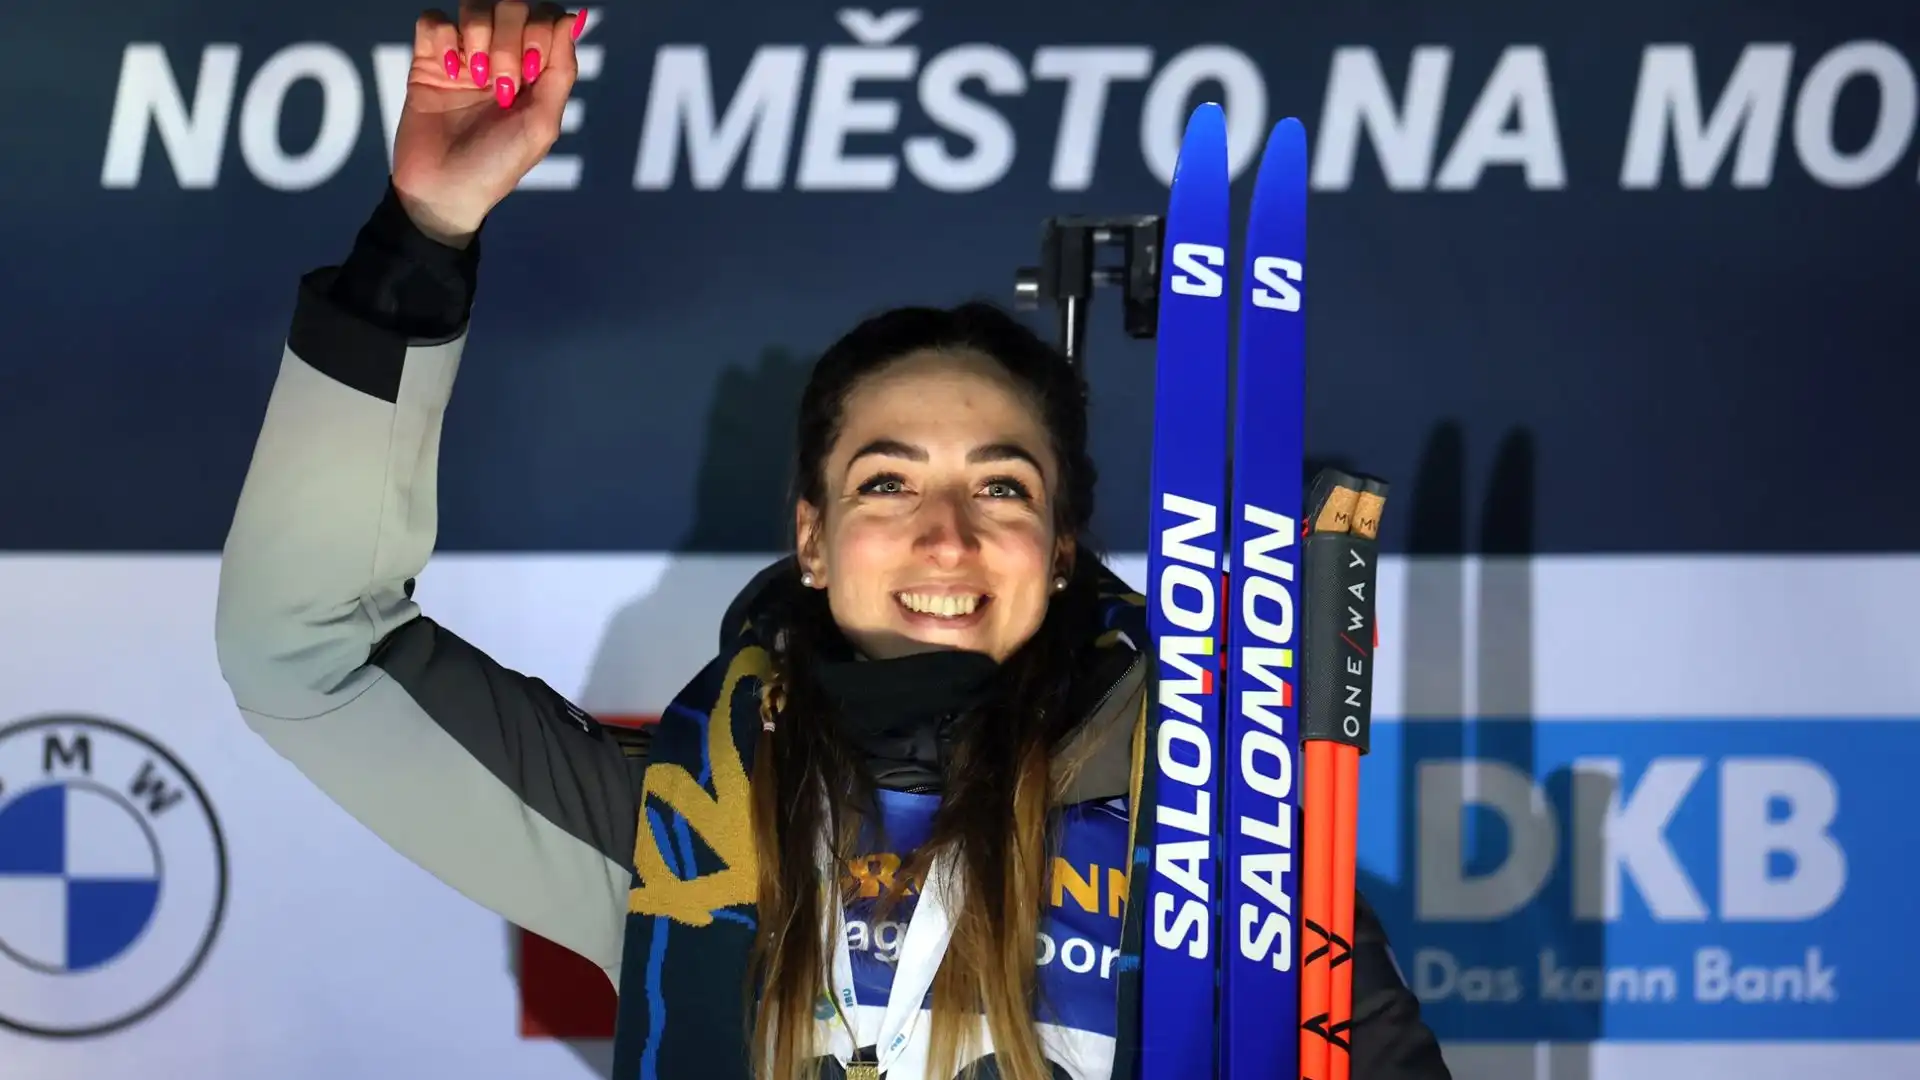 La 29enne sappadina ha conquistato la medaglia d'oro nella gara individuale femminile ai Mondiali di Nove Mesto, in Repubblica Ceca